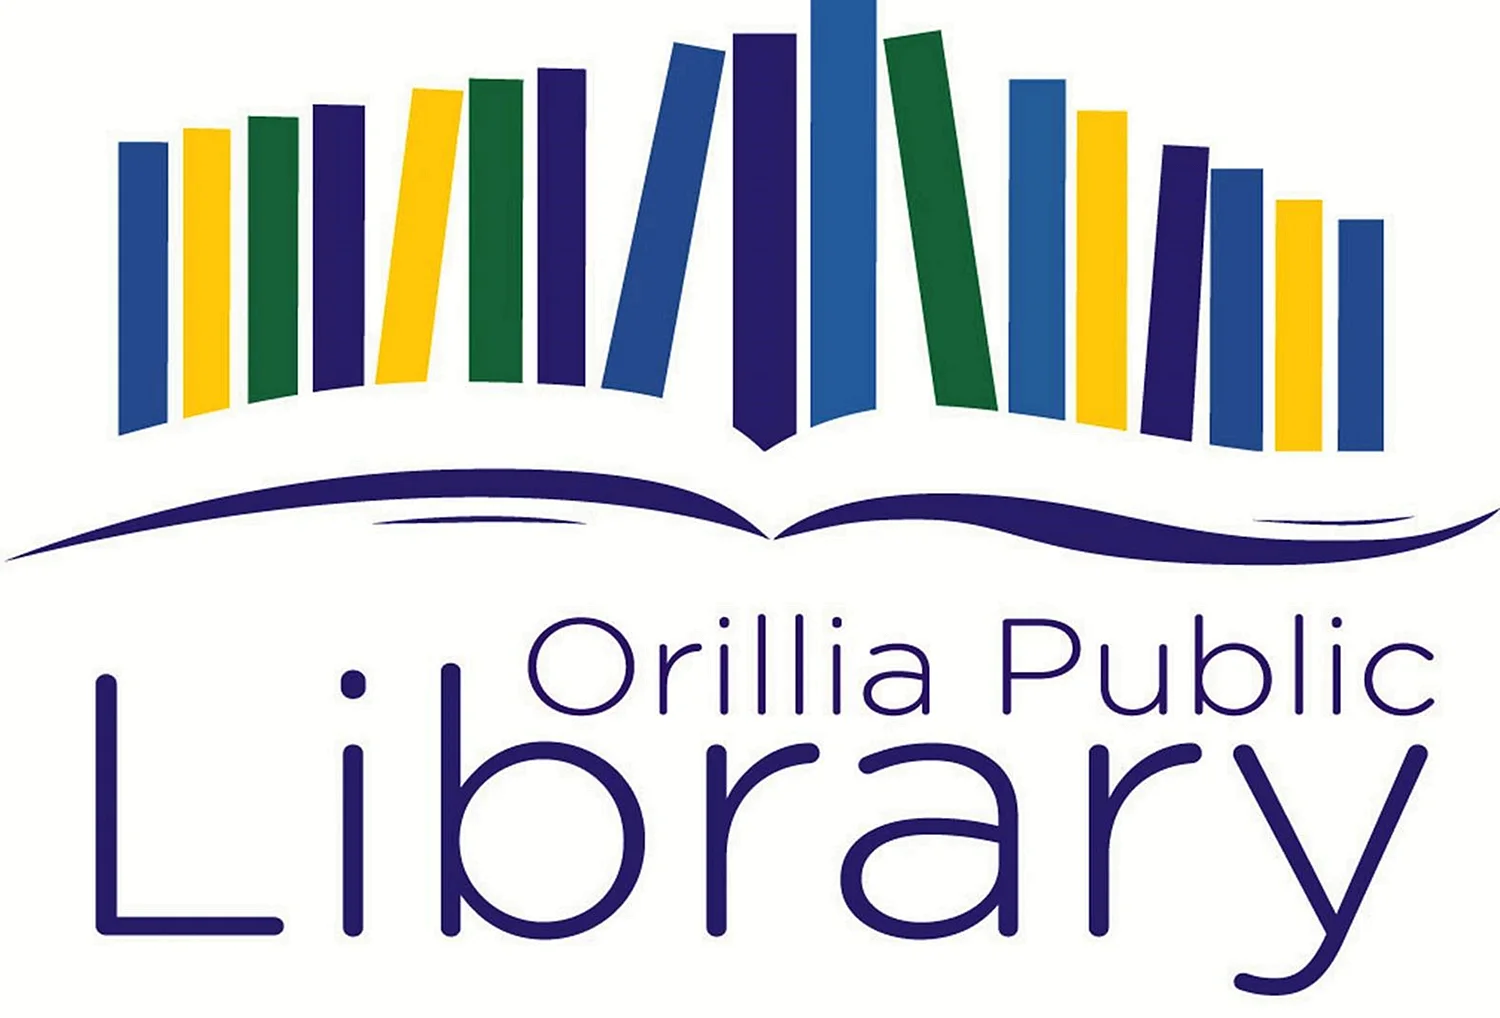 Логотип библиотеки современный